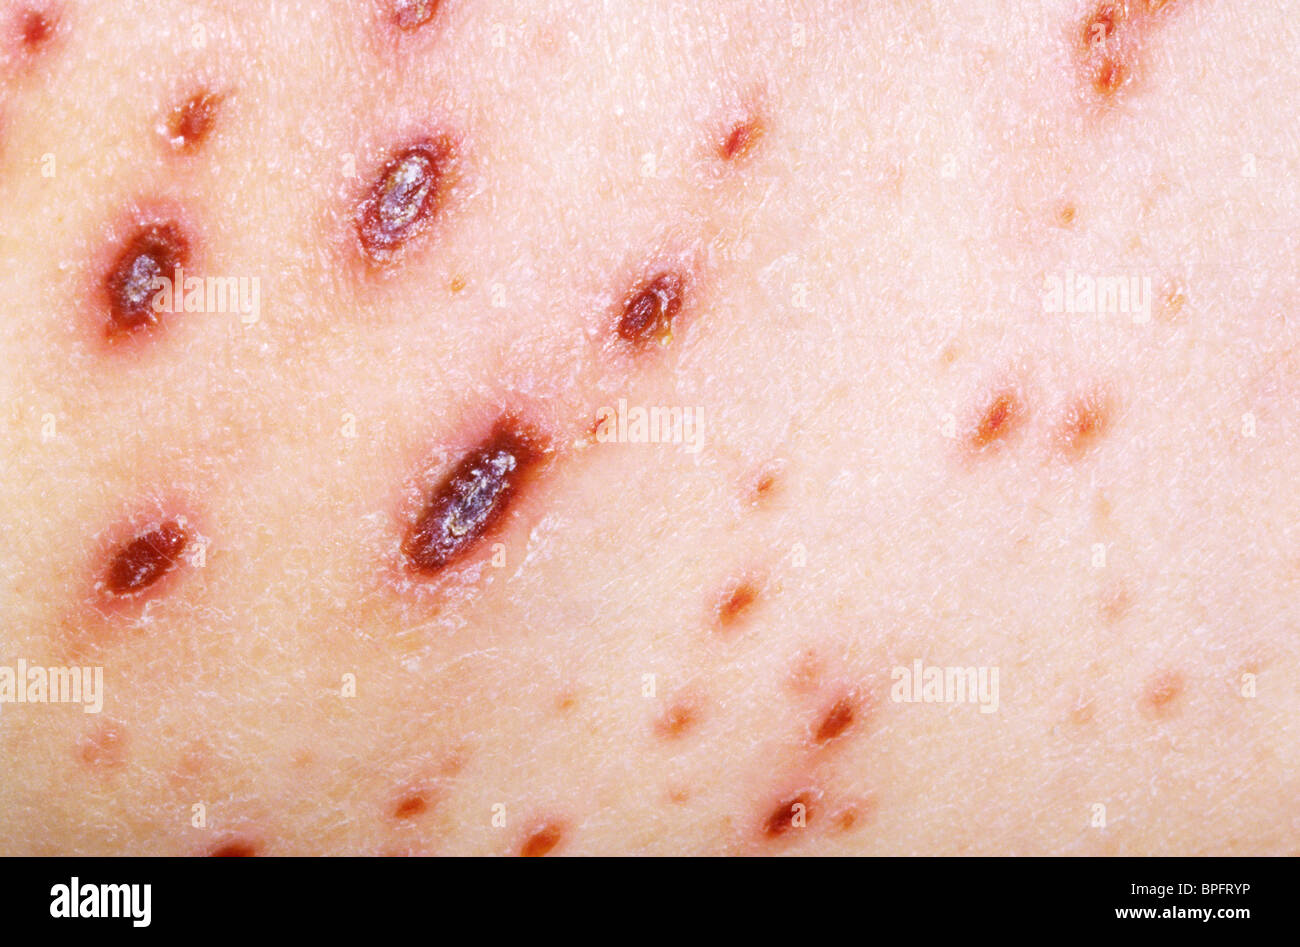 Una foto di una malattia altamente infettiva causata da varicella, un herpesvirus. Foto Stock